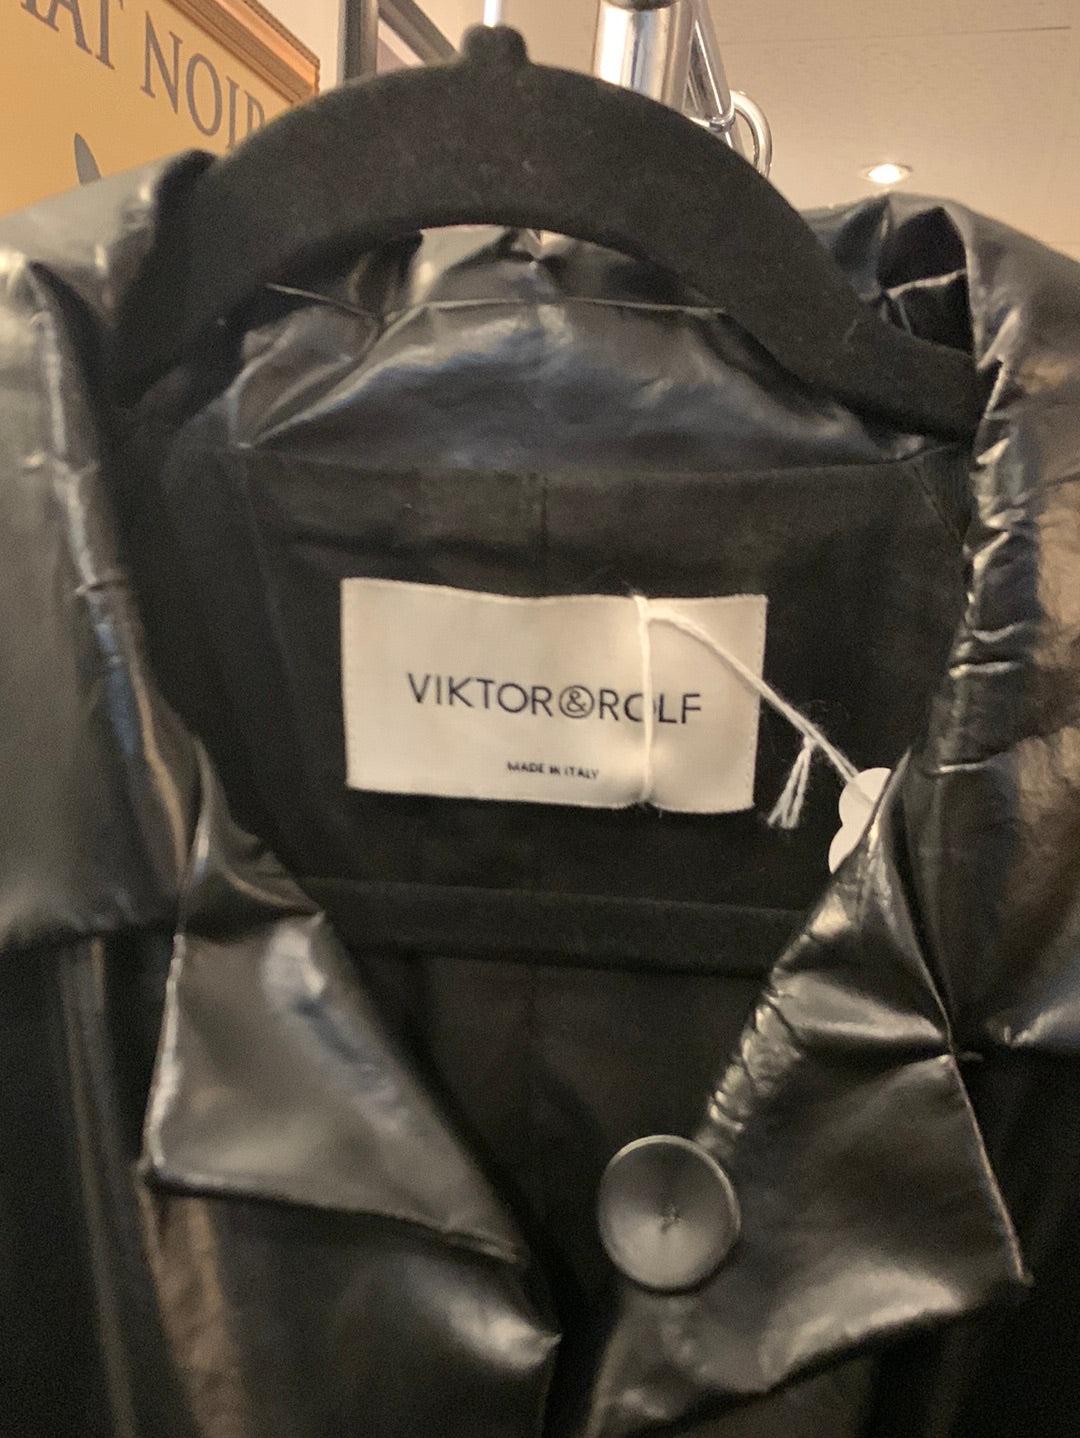 Black Viktor & Rolf Trench Coat